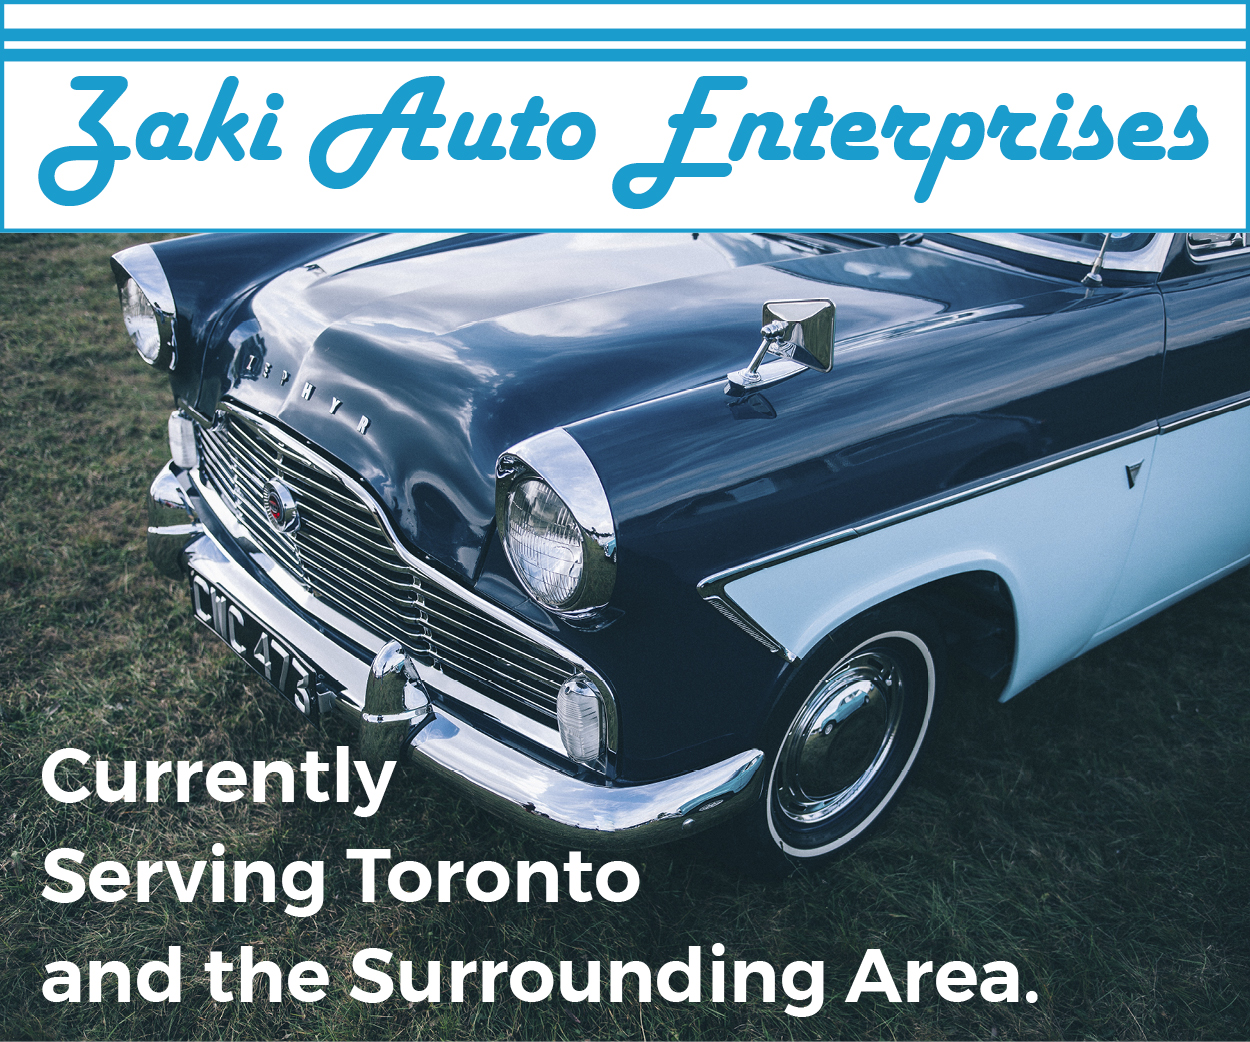 More from Zaki Auto Enterprises